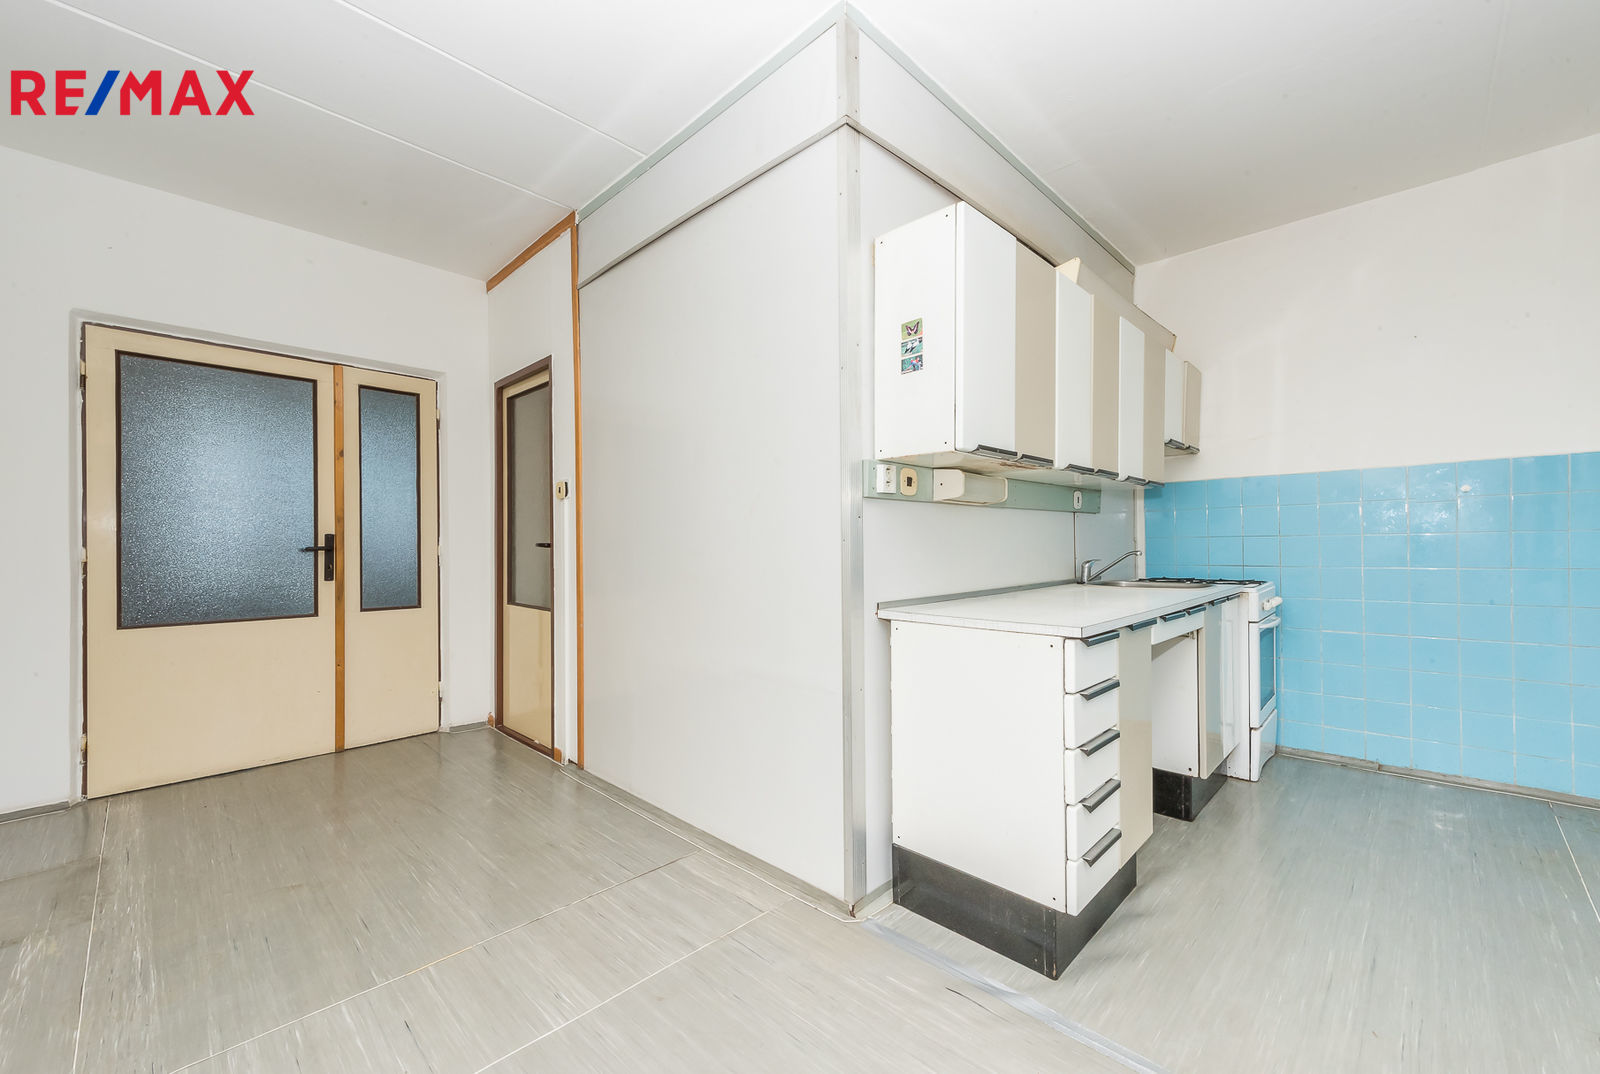 Prodej bytu 4+1 v osobním vlastnictví, 84 m2, Plzeň